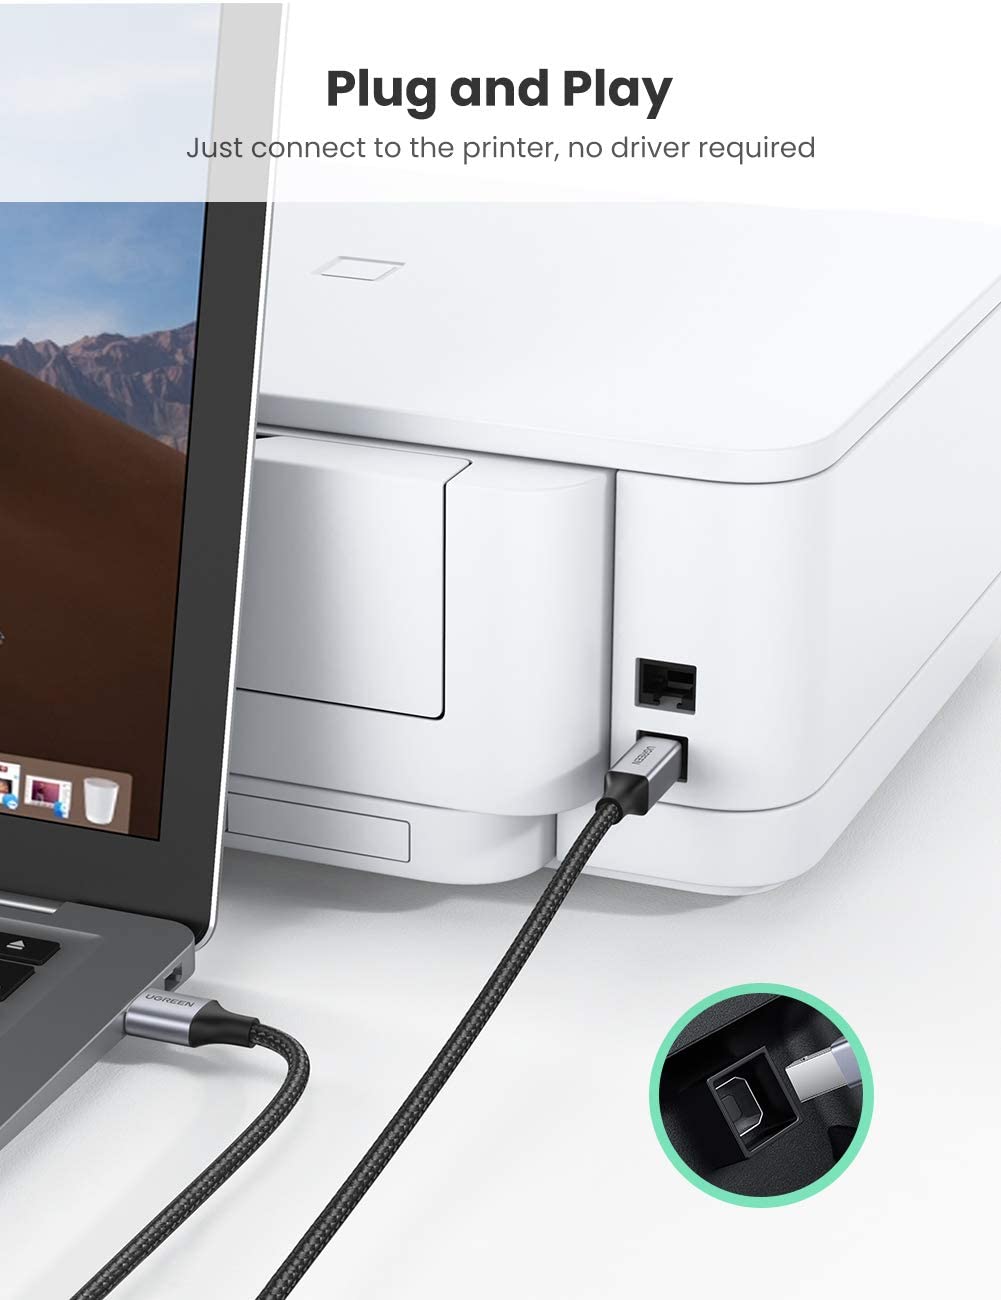 Cáp máy in USB A sang USB B UGREEN US369 - Tốc độ truyền tải 480Mbps - Sử dụng rộng rãi cho máy Fax máy in… - Hàng phân phối chính hãng - Bảo hành 18 tháng 1 đổi 1